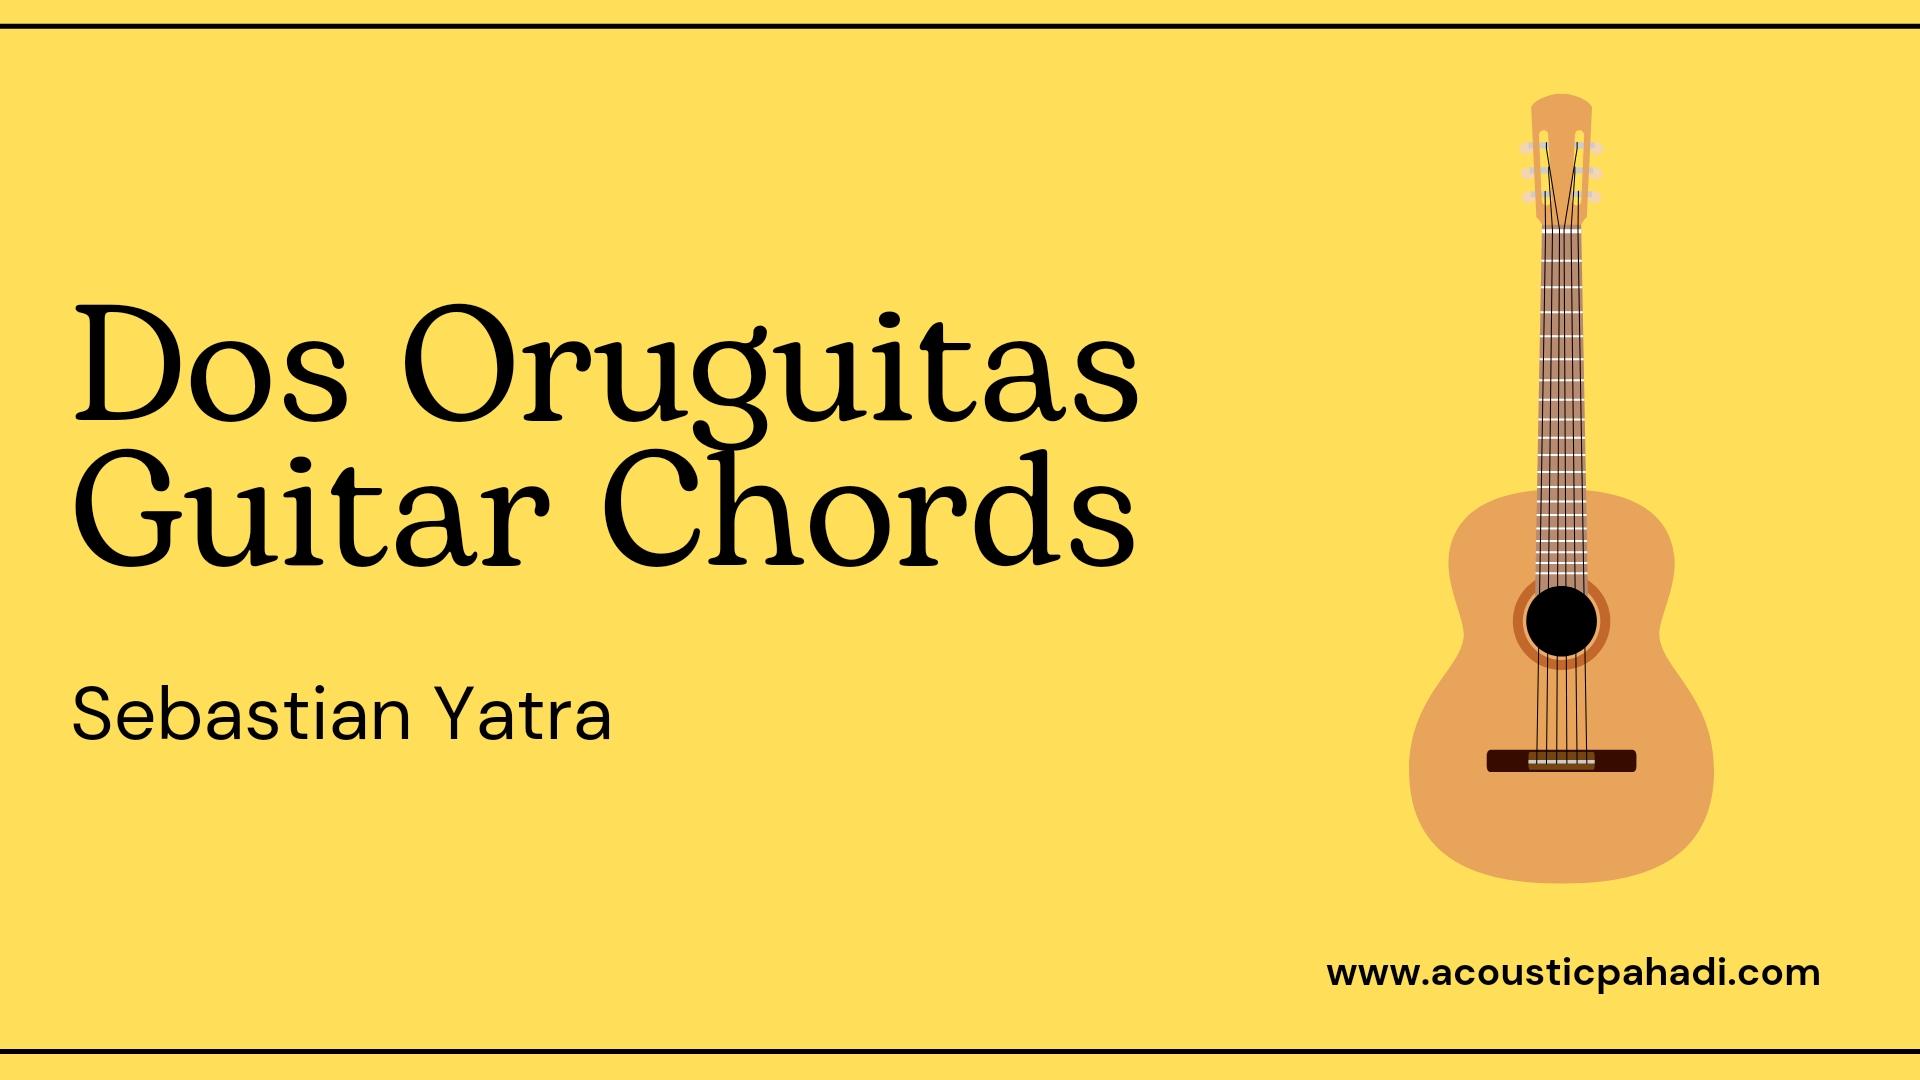 Dos Oruguitas Guitar Chords